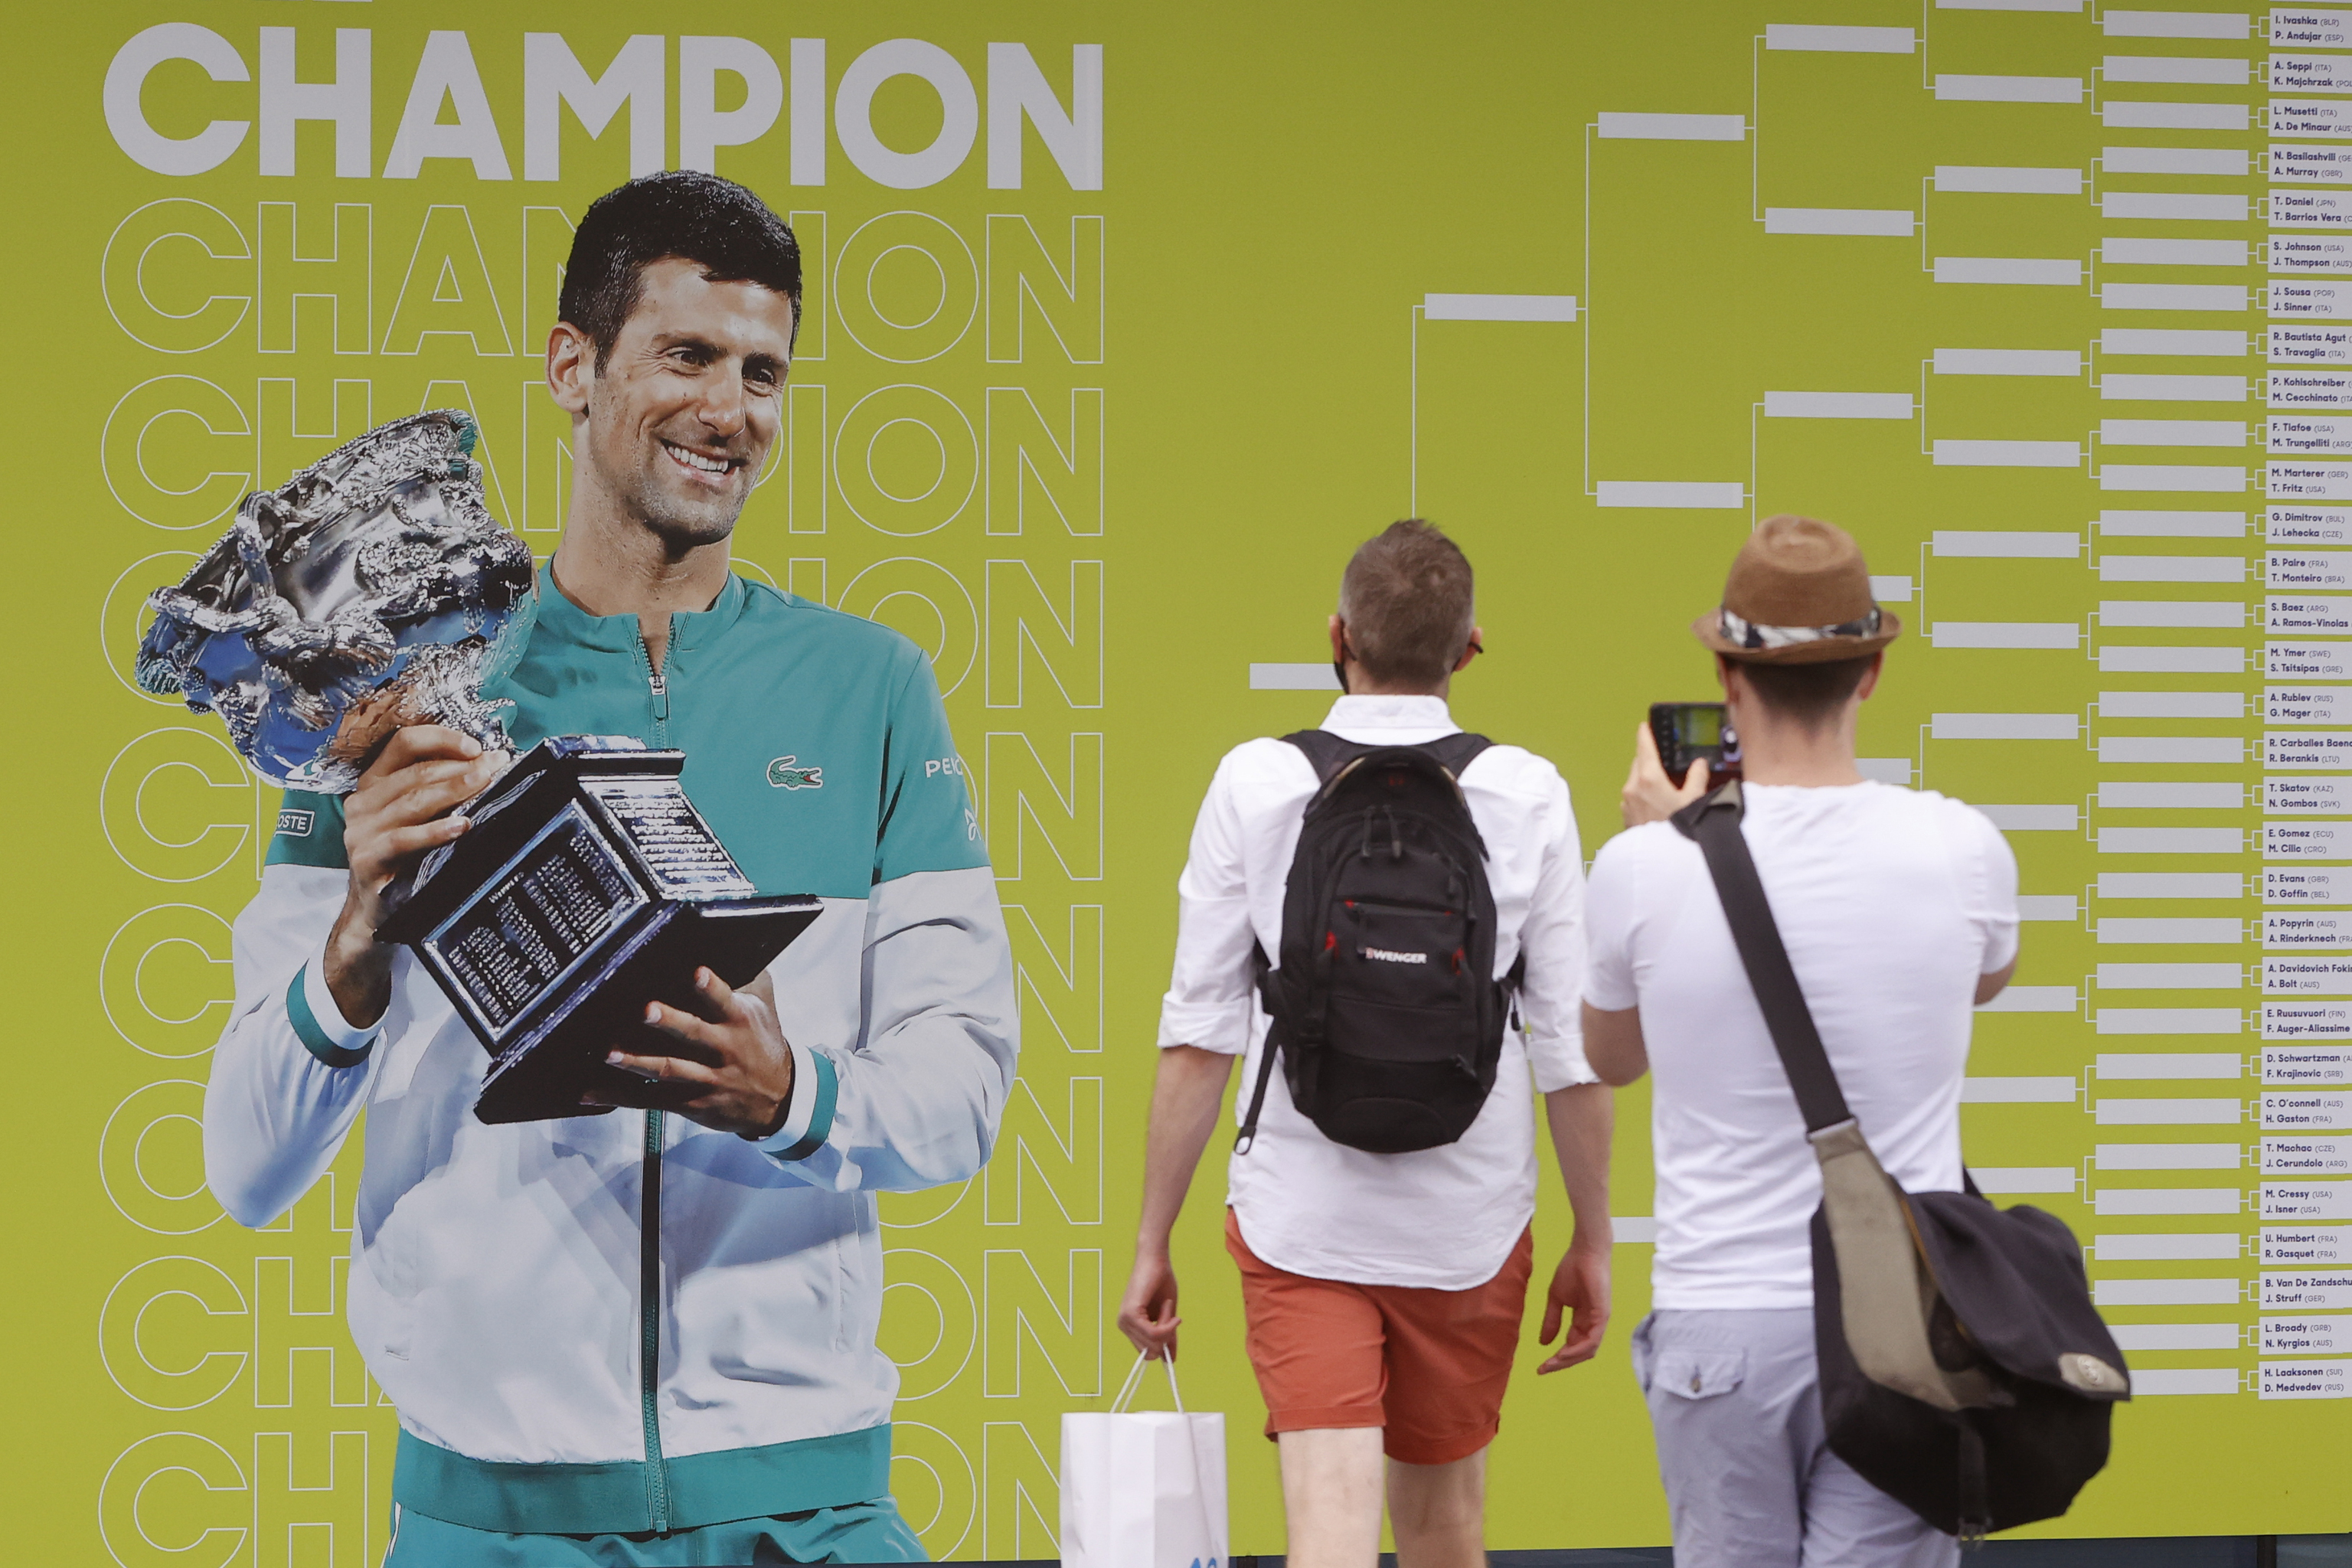 Fans toman fotografas del cuadro del torneo con la imagen de Djokovic como vigente campen.